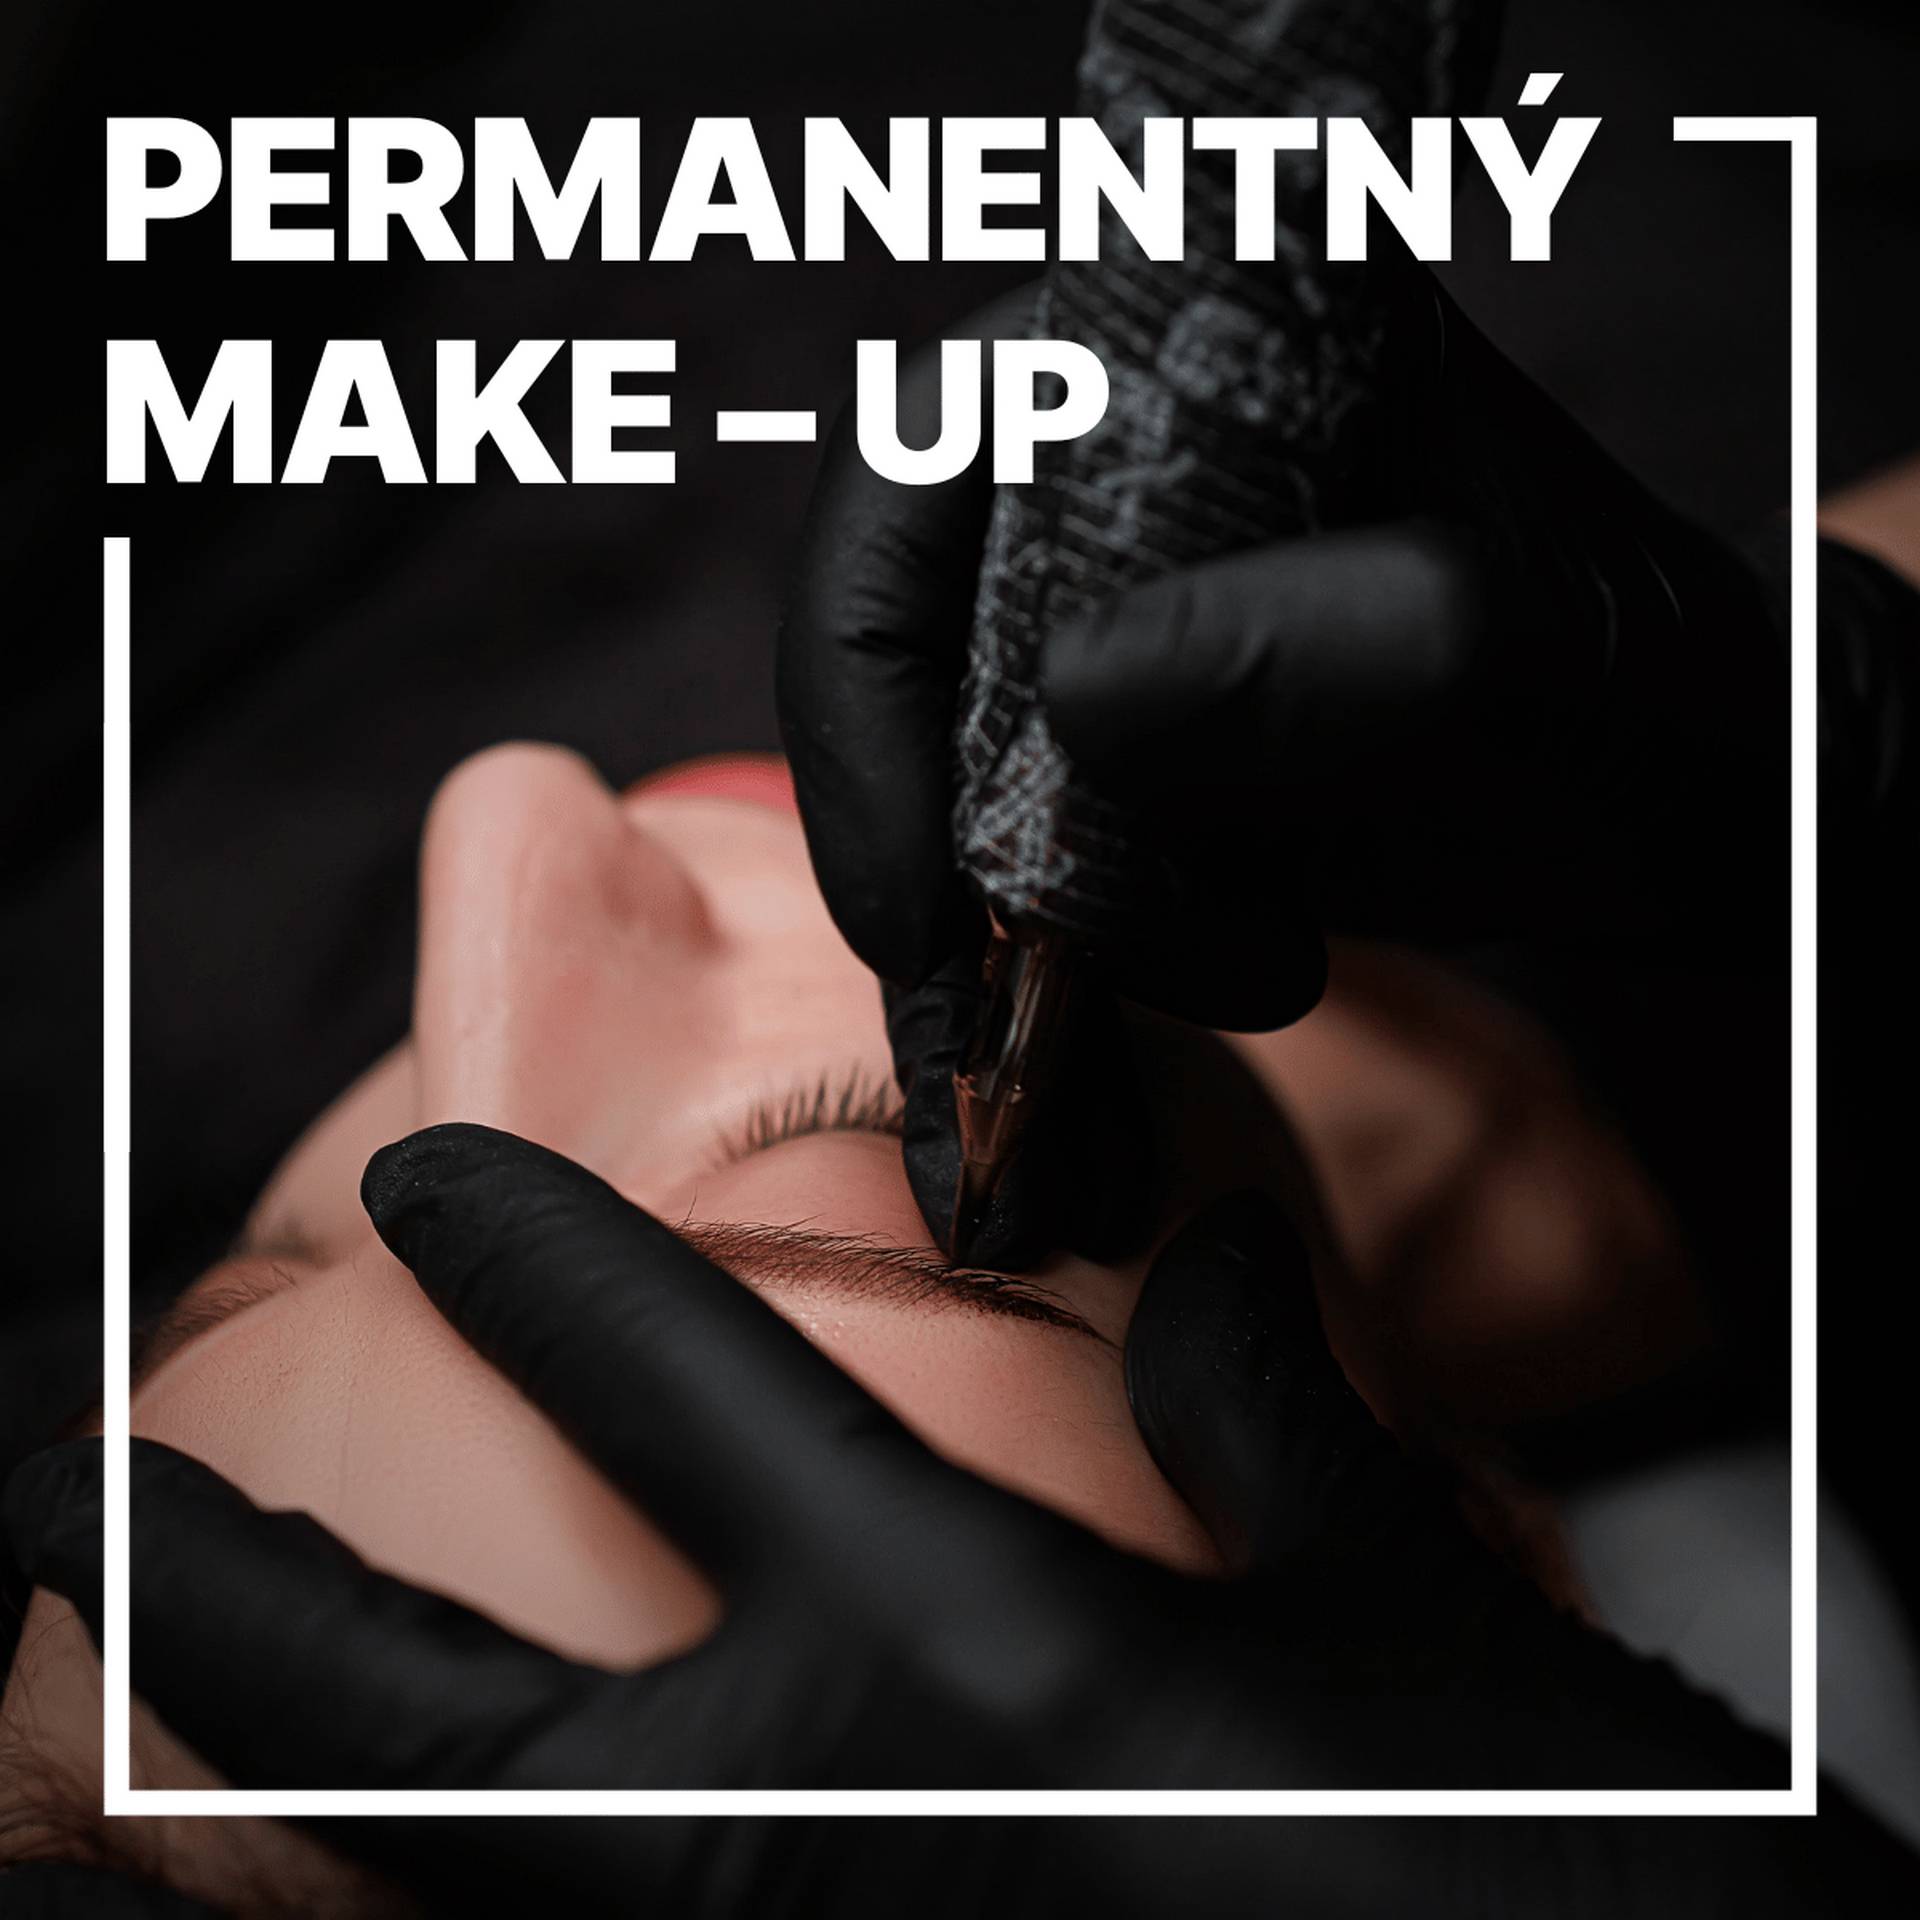 Permanentny make-up Pudrovanie - shading + Permanentny make - up ocnych liniek - Global Education Centre